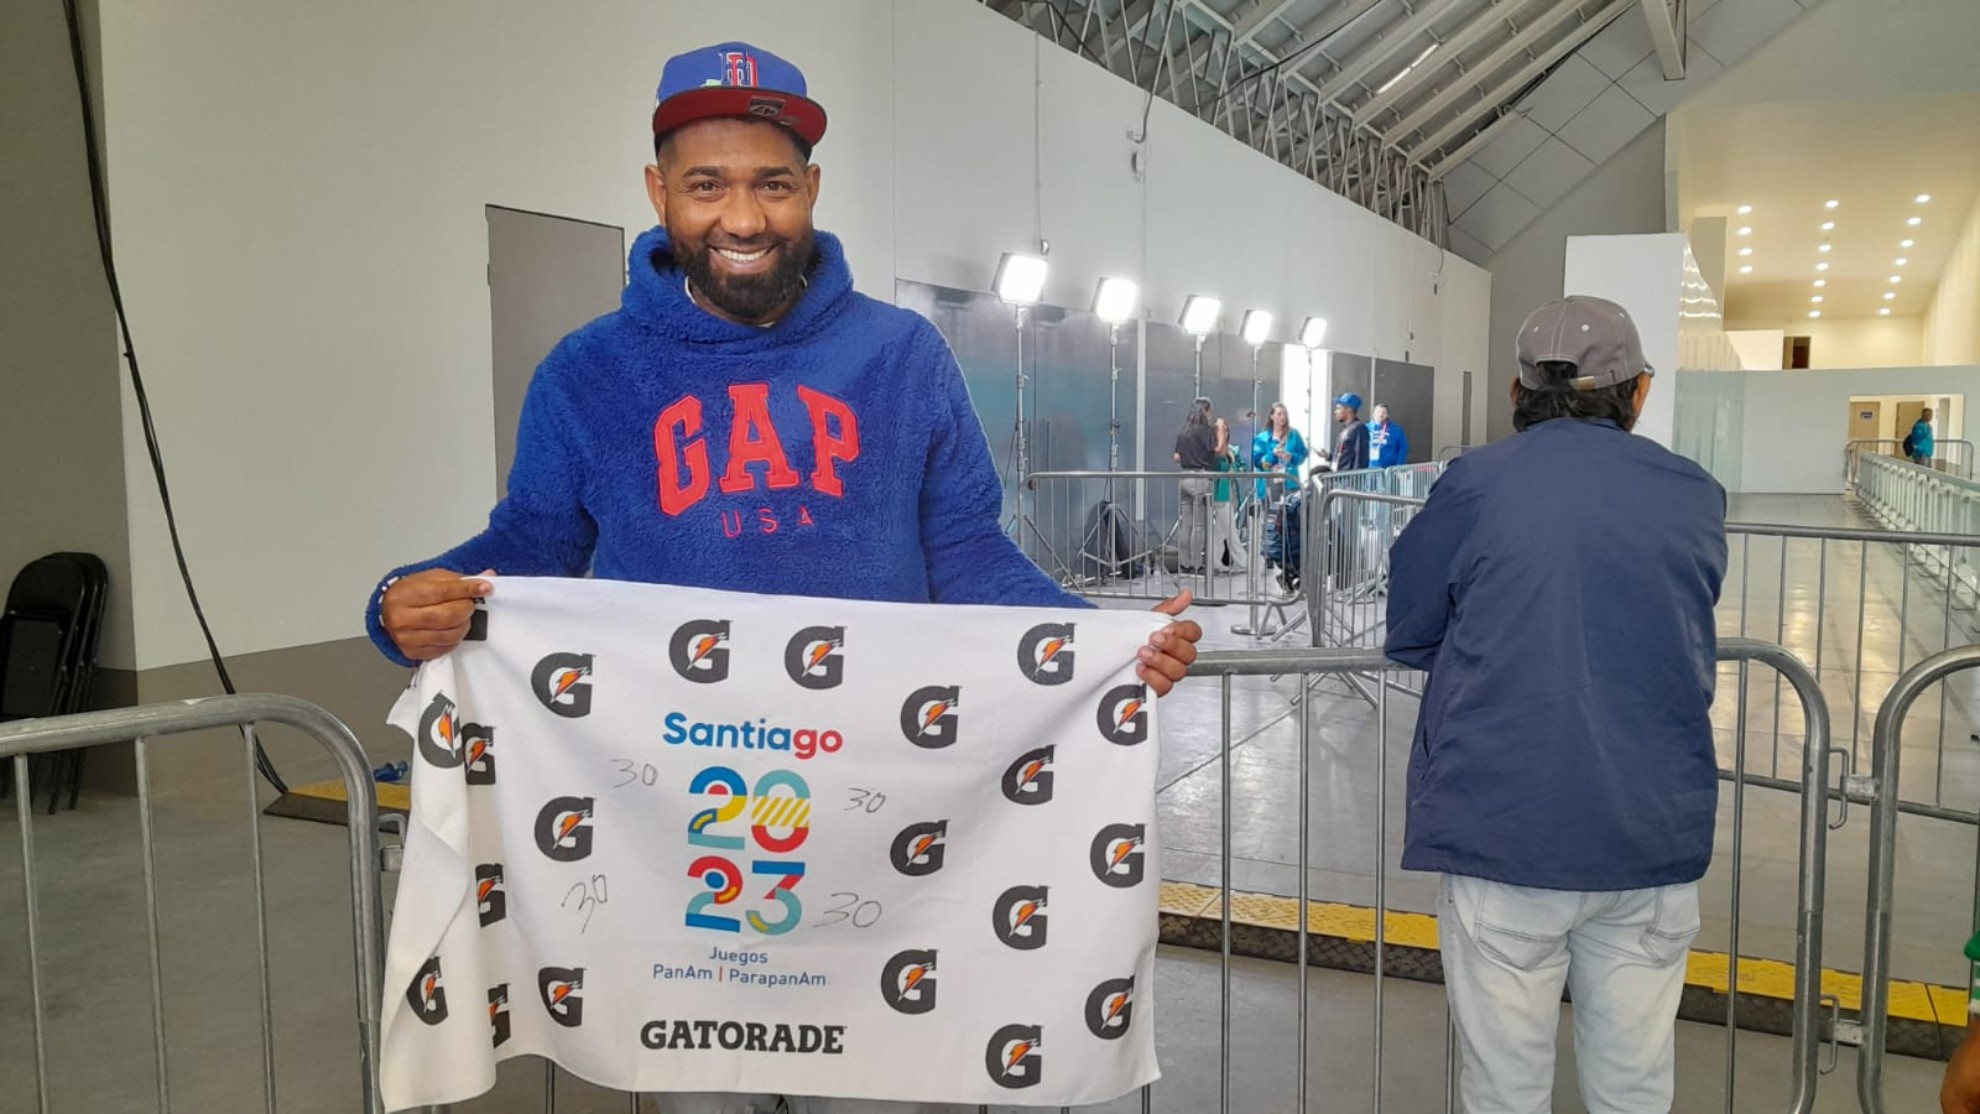 Hincha dominicano “la hizo” y se llevó de recuerdo la toalla de su jugador favorito